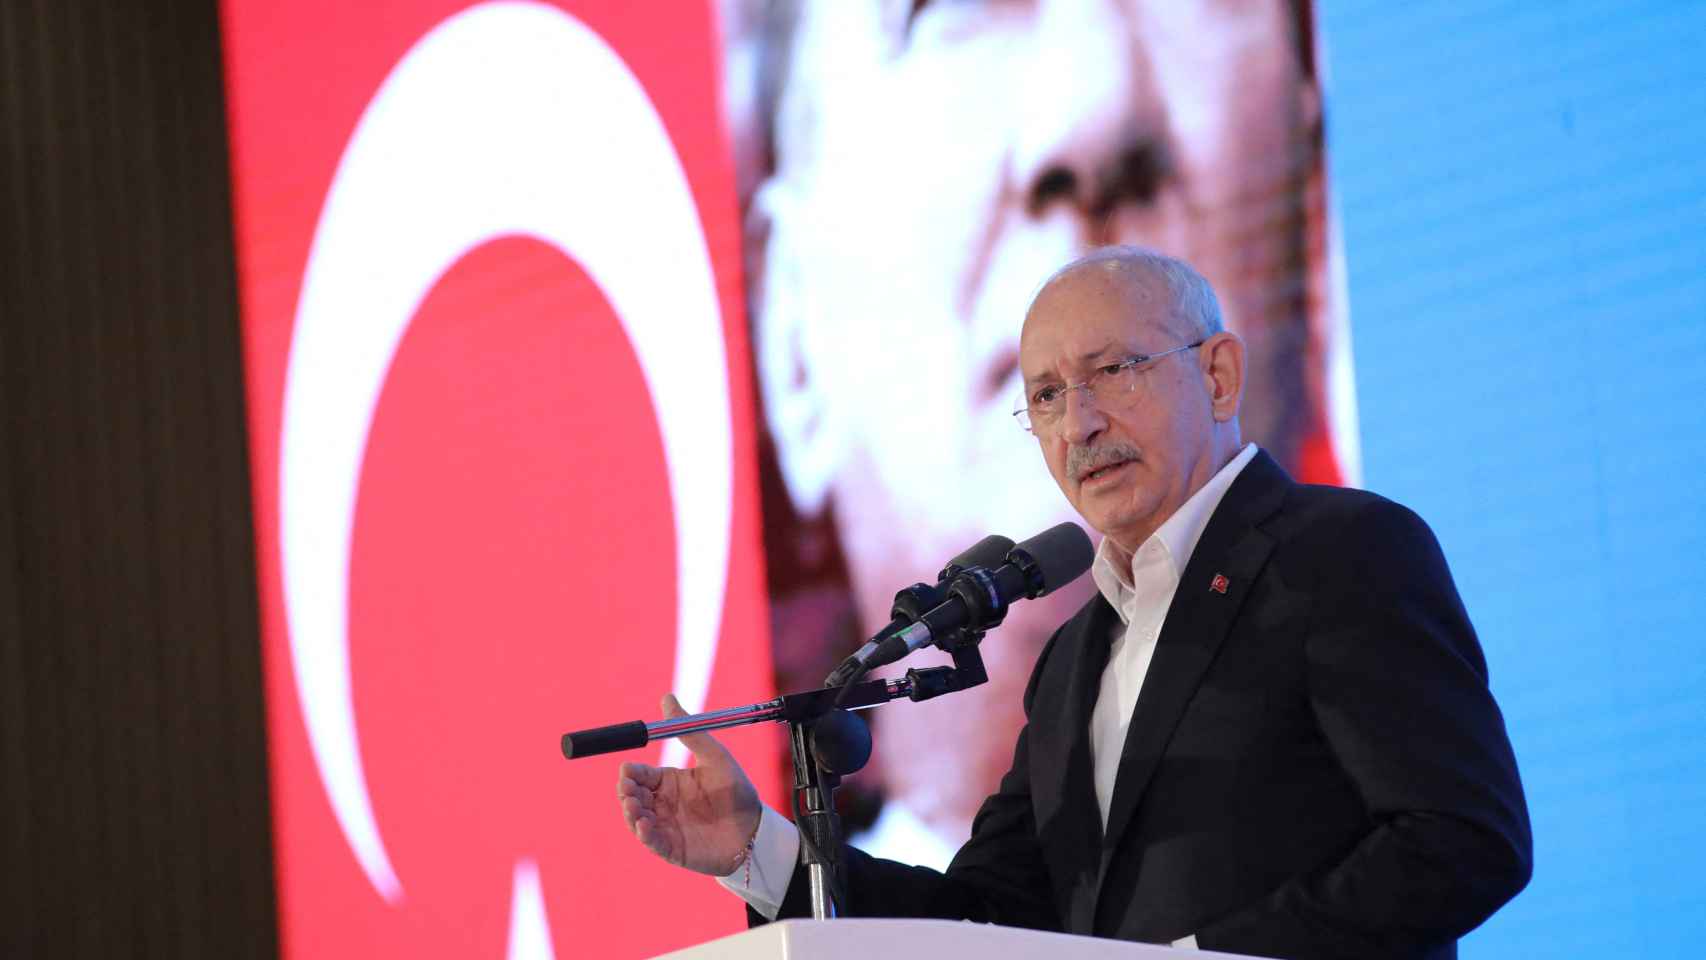 Kemal Kilicdaroglu se dirige a la audiencia durante una reunión en Ankara.